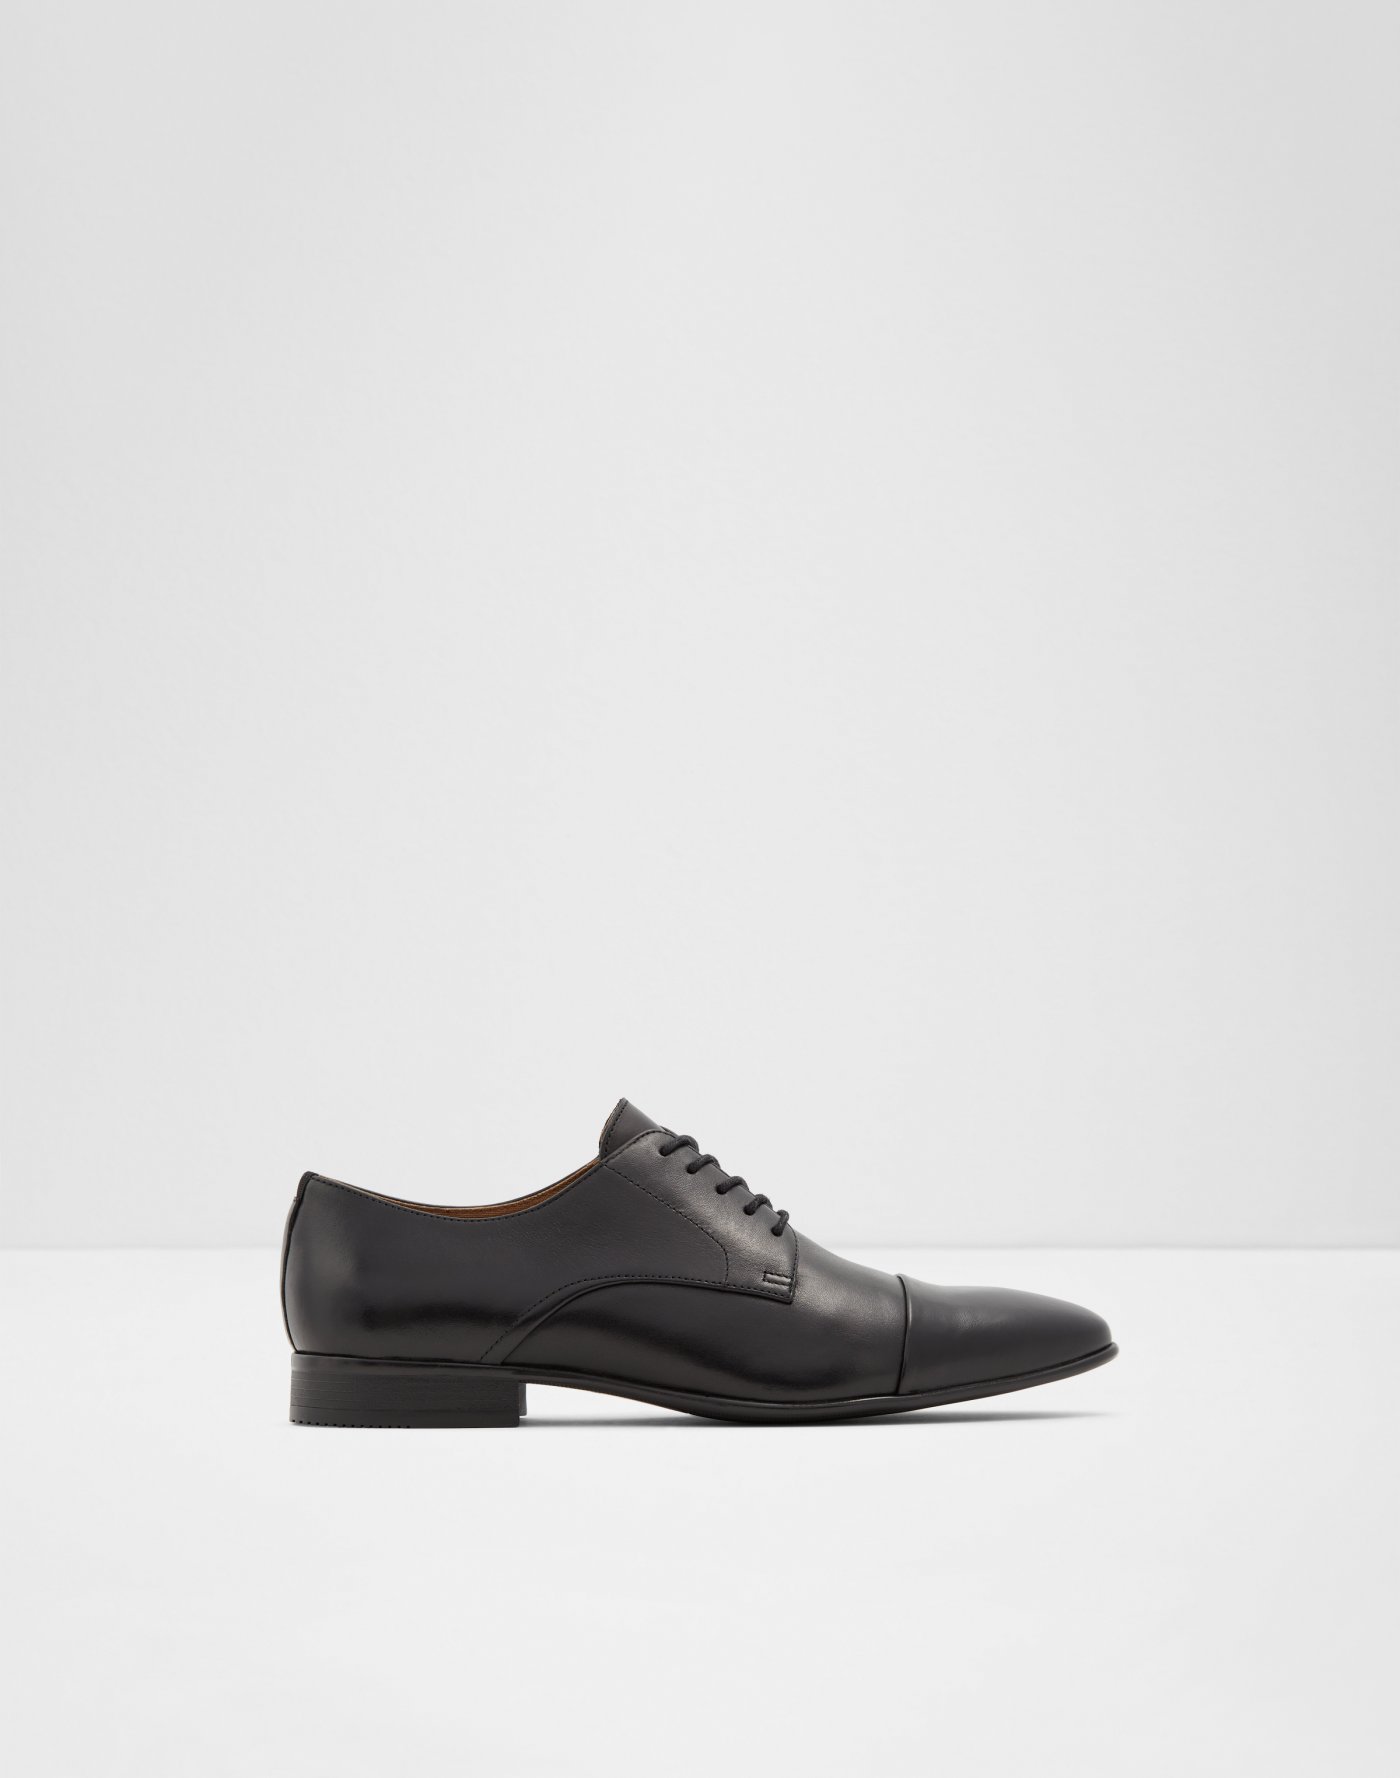 aldo business casual shoes